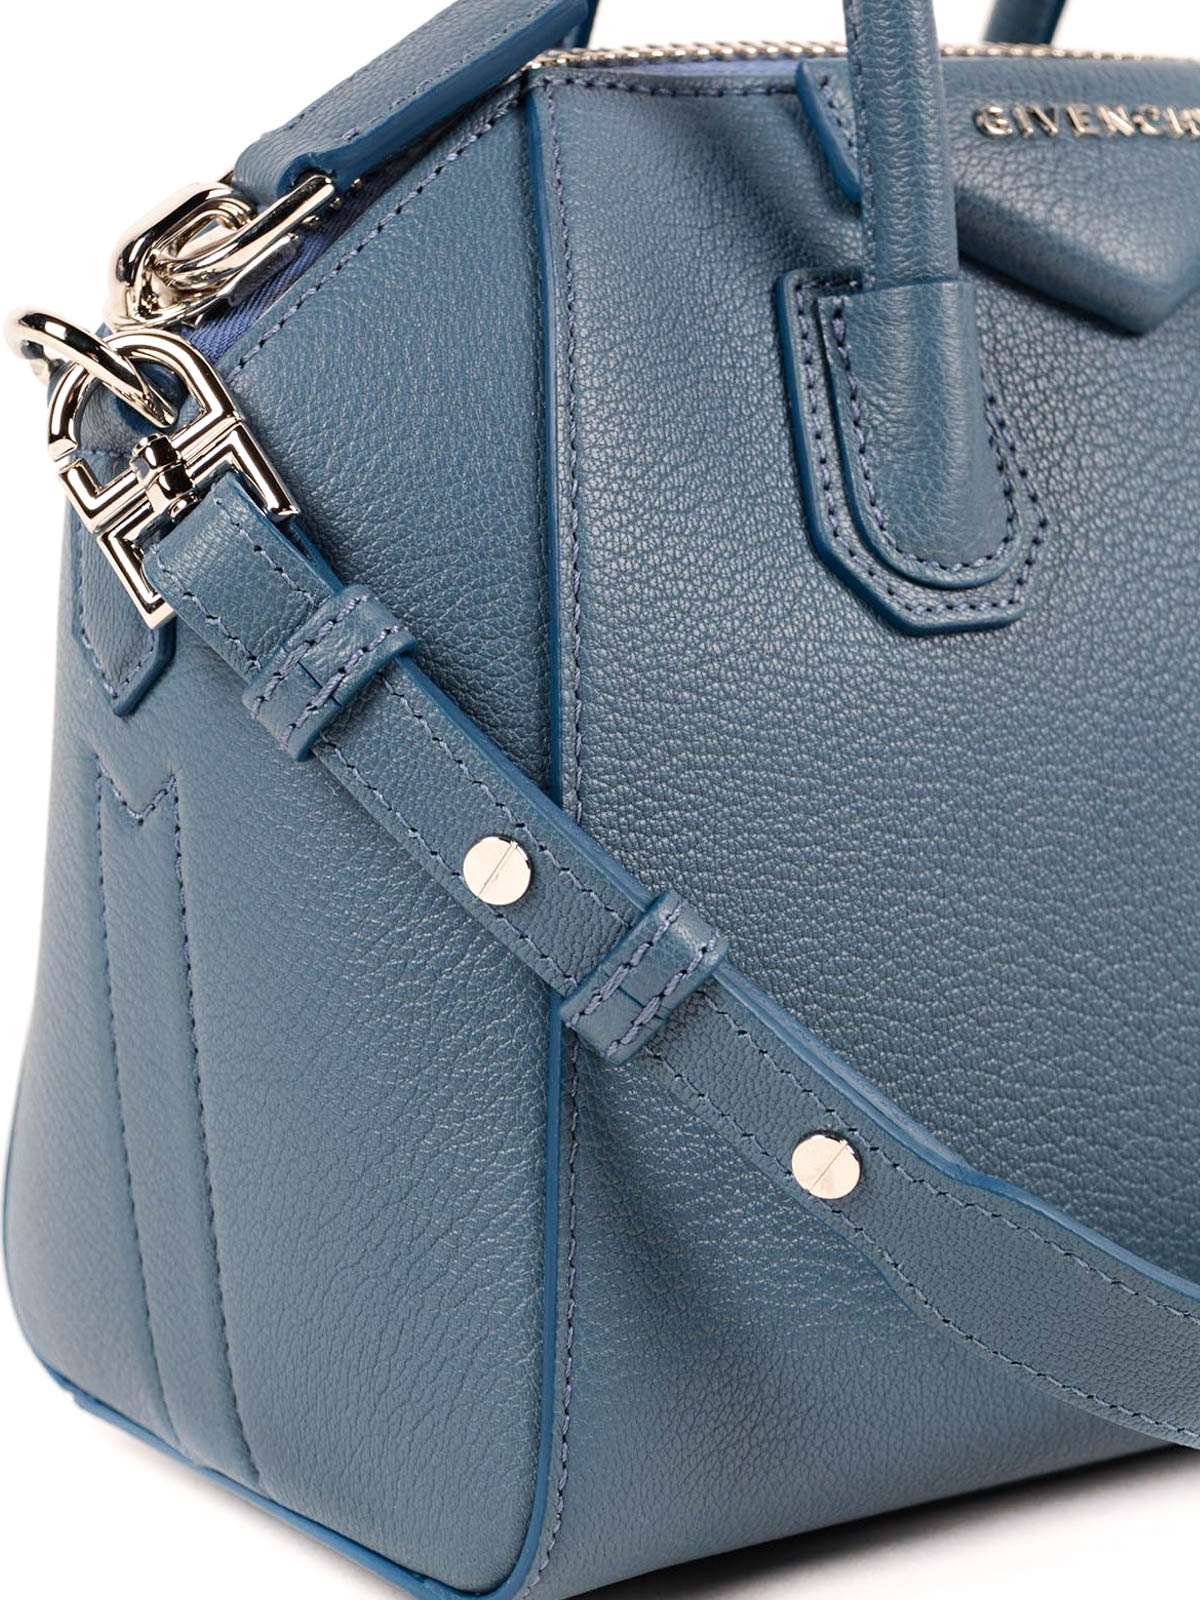 Givenchy, Bags, Givenchy Blue Mini Antigona Crossbody